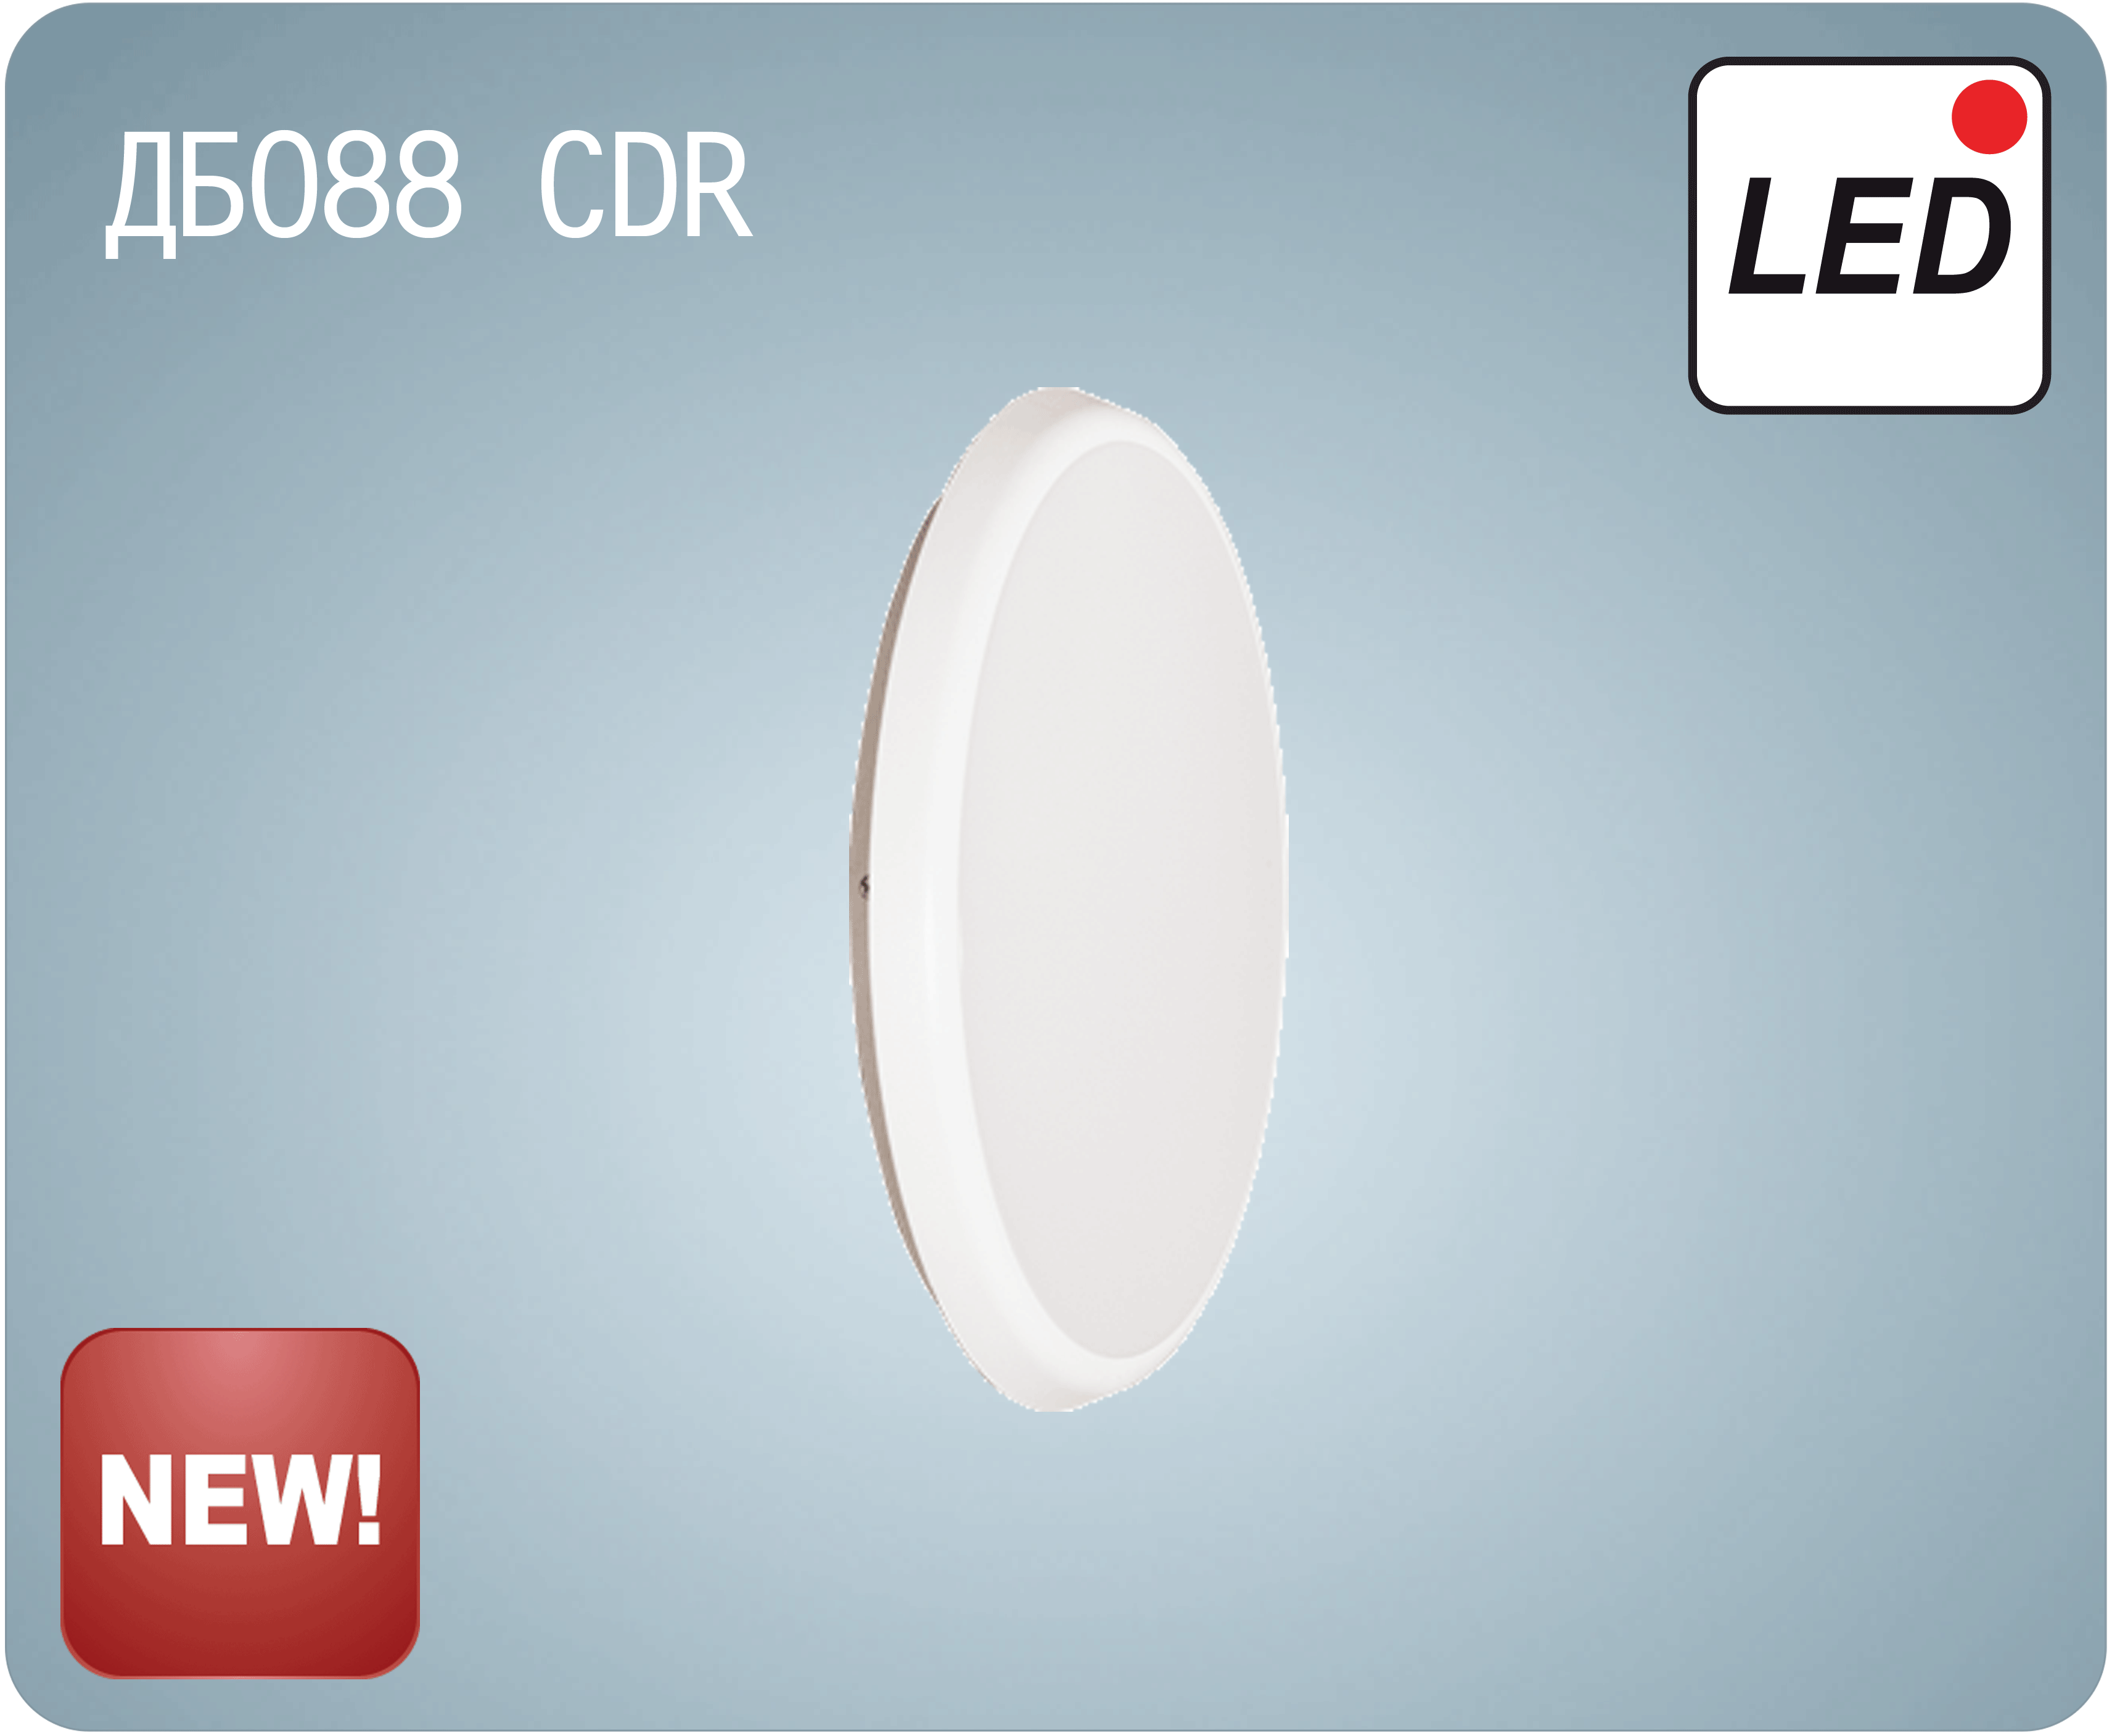 Новая серия светодиодных светильников ДБО88 CDR от АСТЗ (Превью)